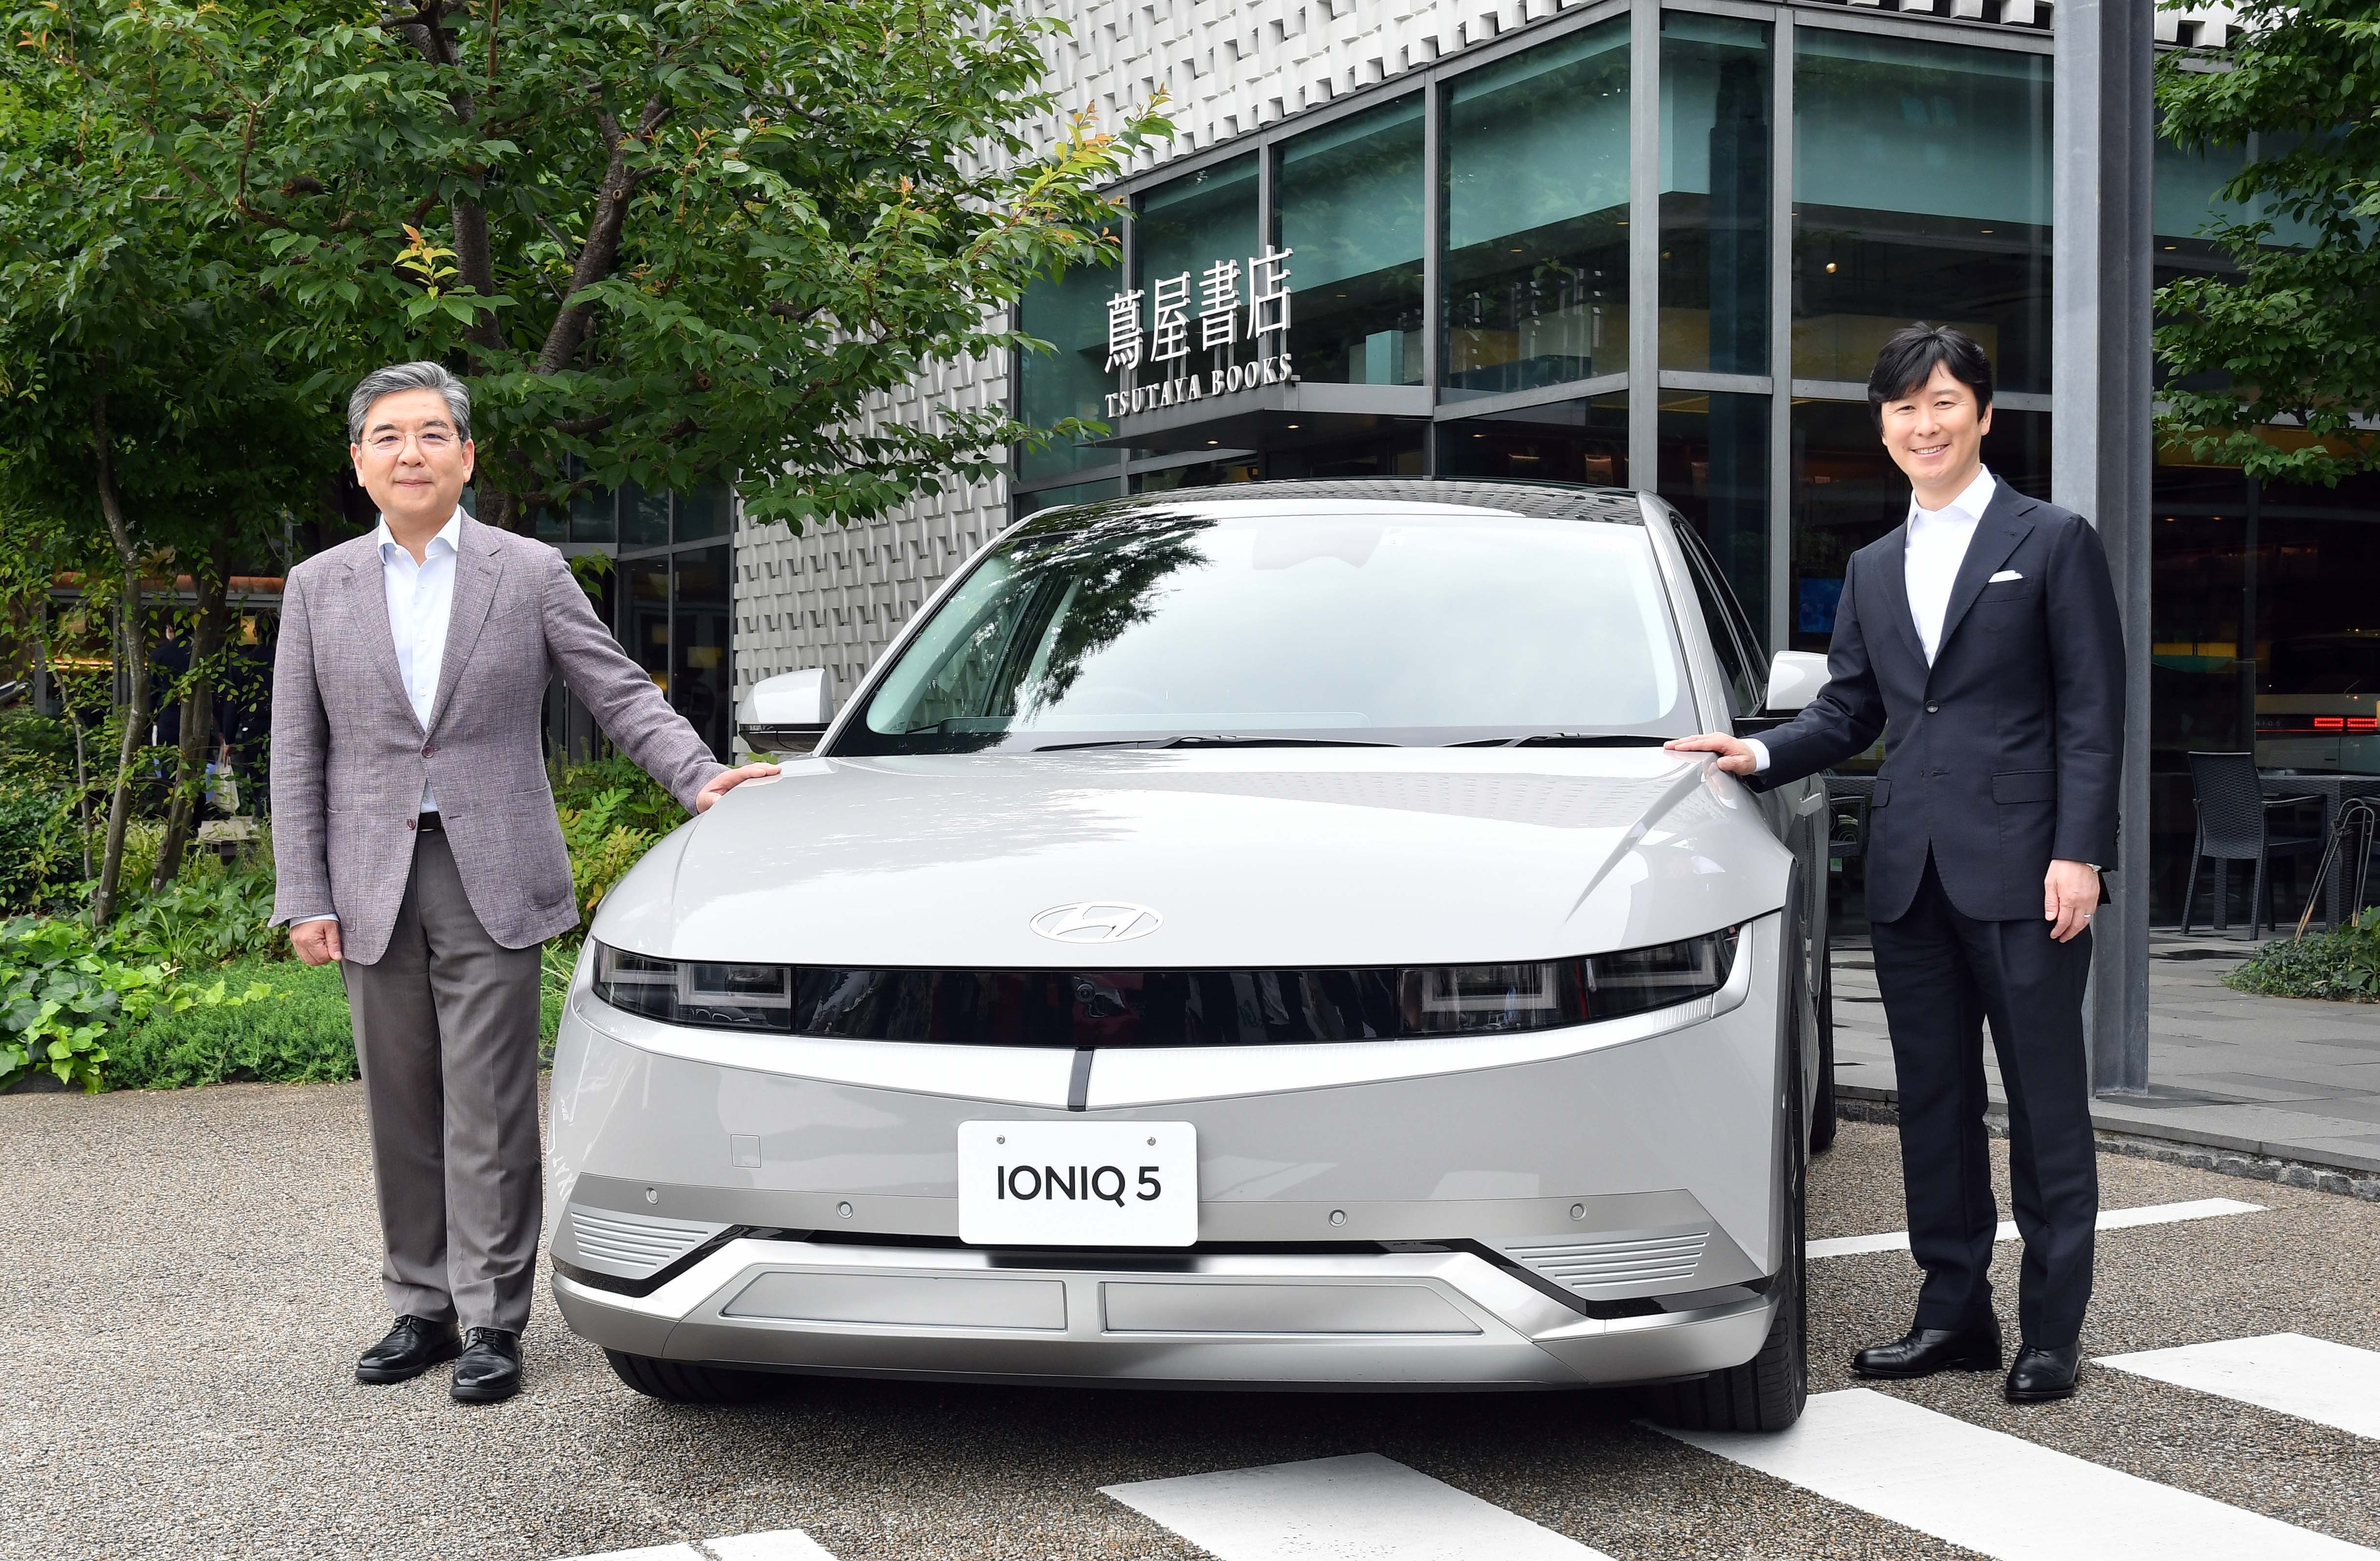 장재훈(왼쪽) 현대자동차 사장과 컬처 컨비니언스 클럽의 다카하시 야스노리 대표이사가 22일 일본 도쿄에서 무공해차량(ZEV) 콘텐츠 관련 업무협약을 맺은 뒤 현대차의 전기차 ‘아이오닉5’와 함께 기념사진을 찍고 있다. 현대차 제공